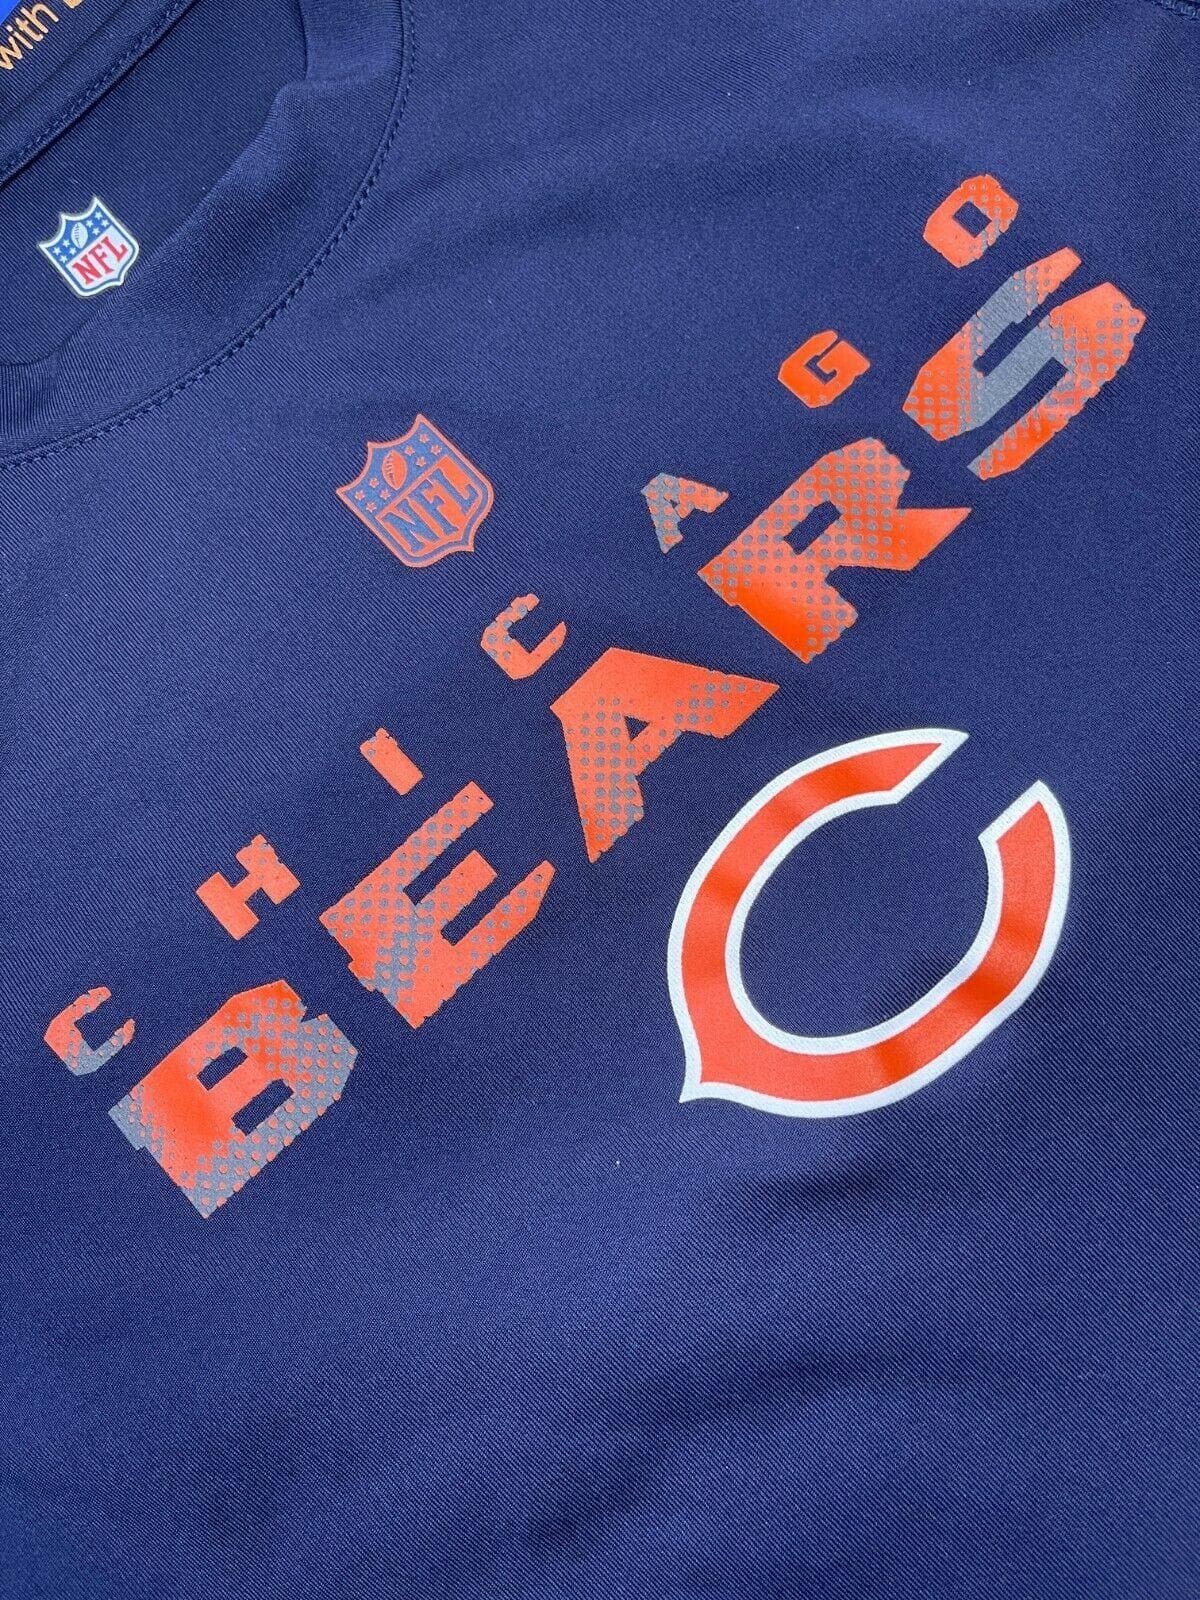 NFL Chicago Bears Dri-Tek T-Shirt Youth Medium 10-12